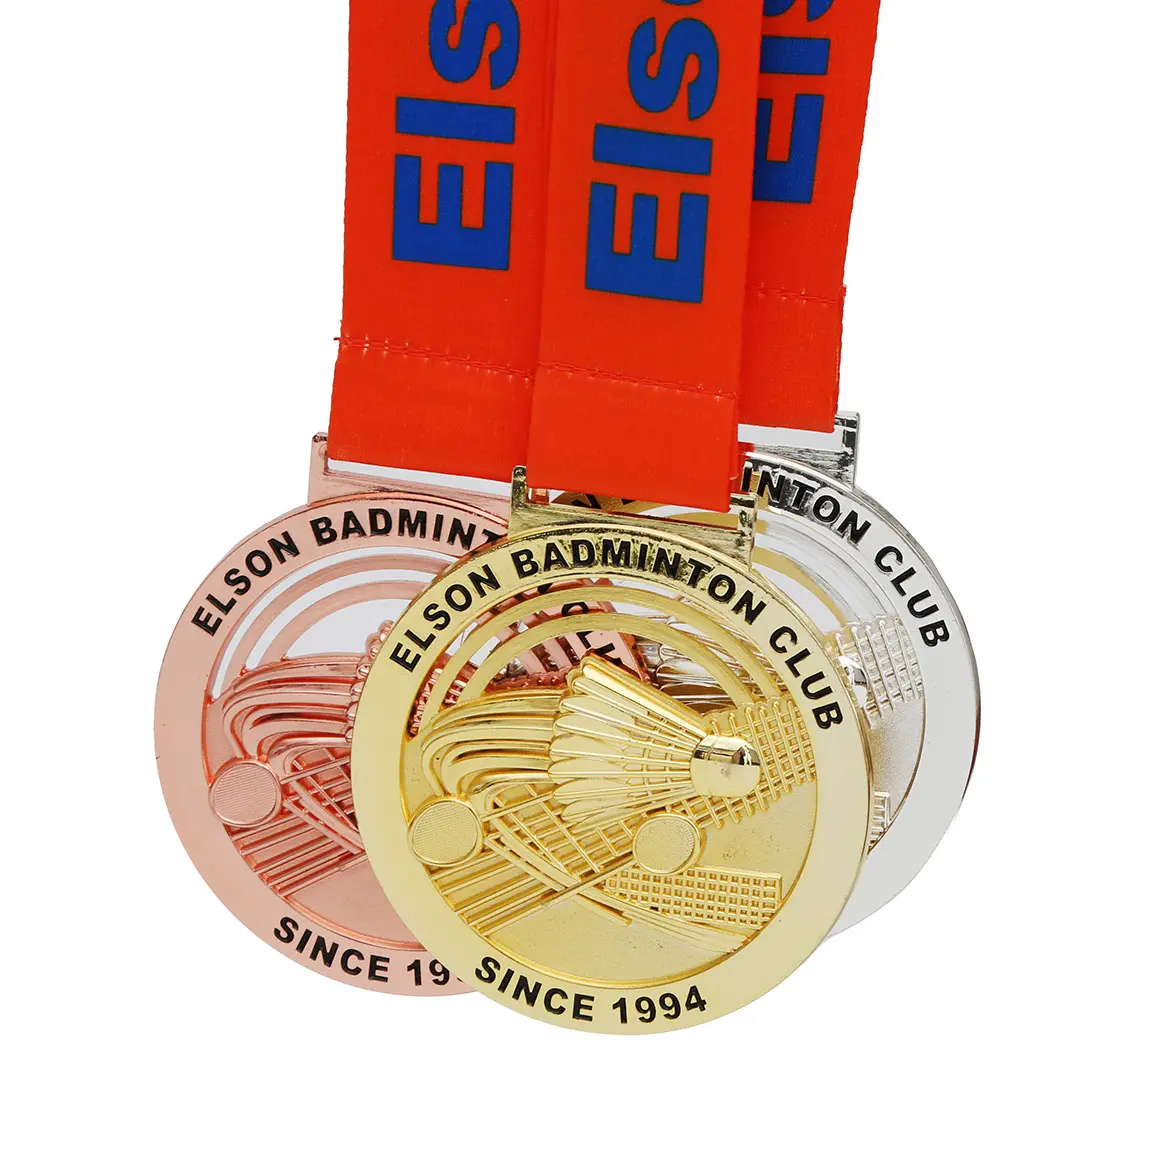 메달 제조 업체 사용자 정의 금속 메달 마라톤 사이클링 배드민턴 스포츠 챔피언십 레이스 상 골드 3D 메달 리본